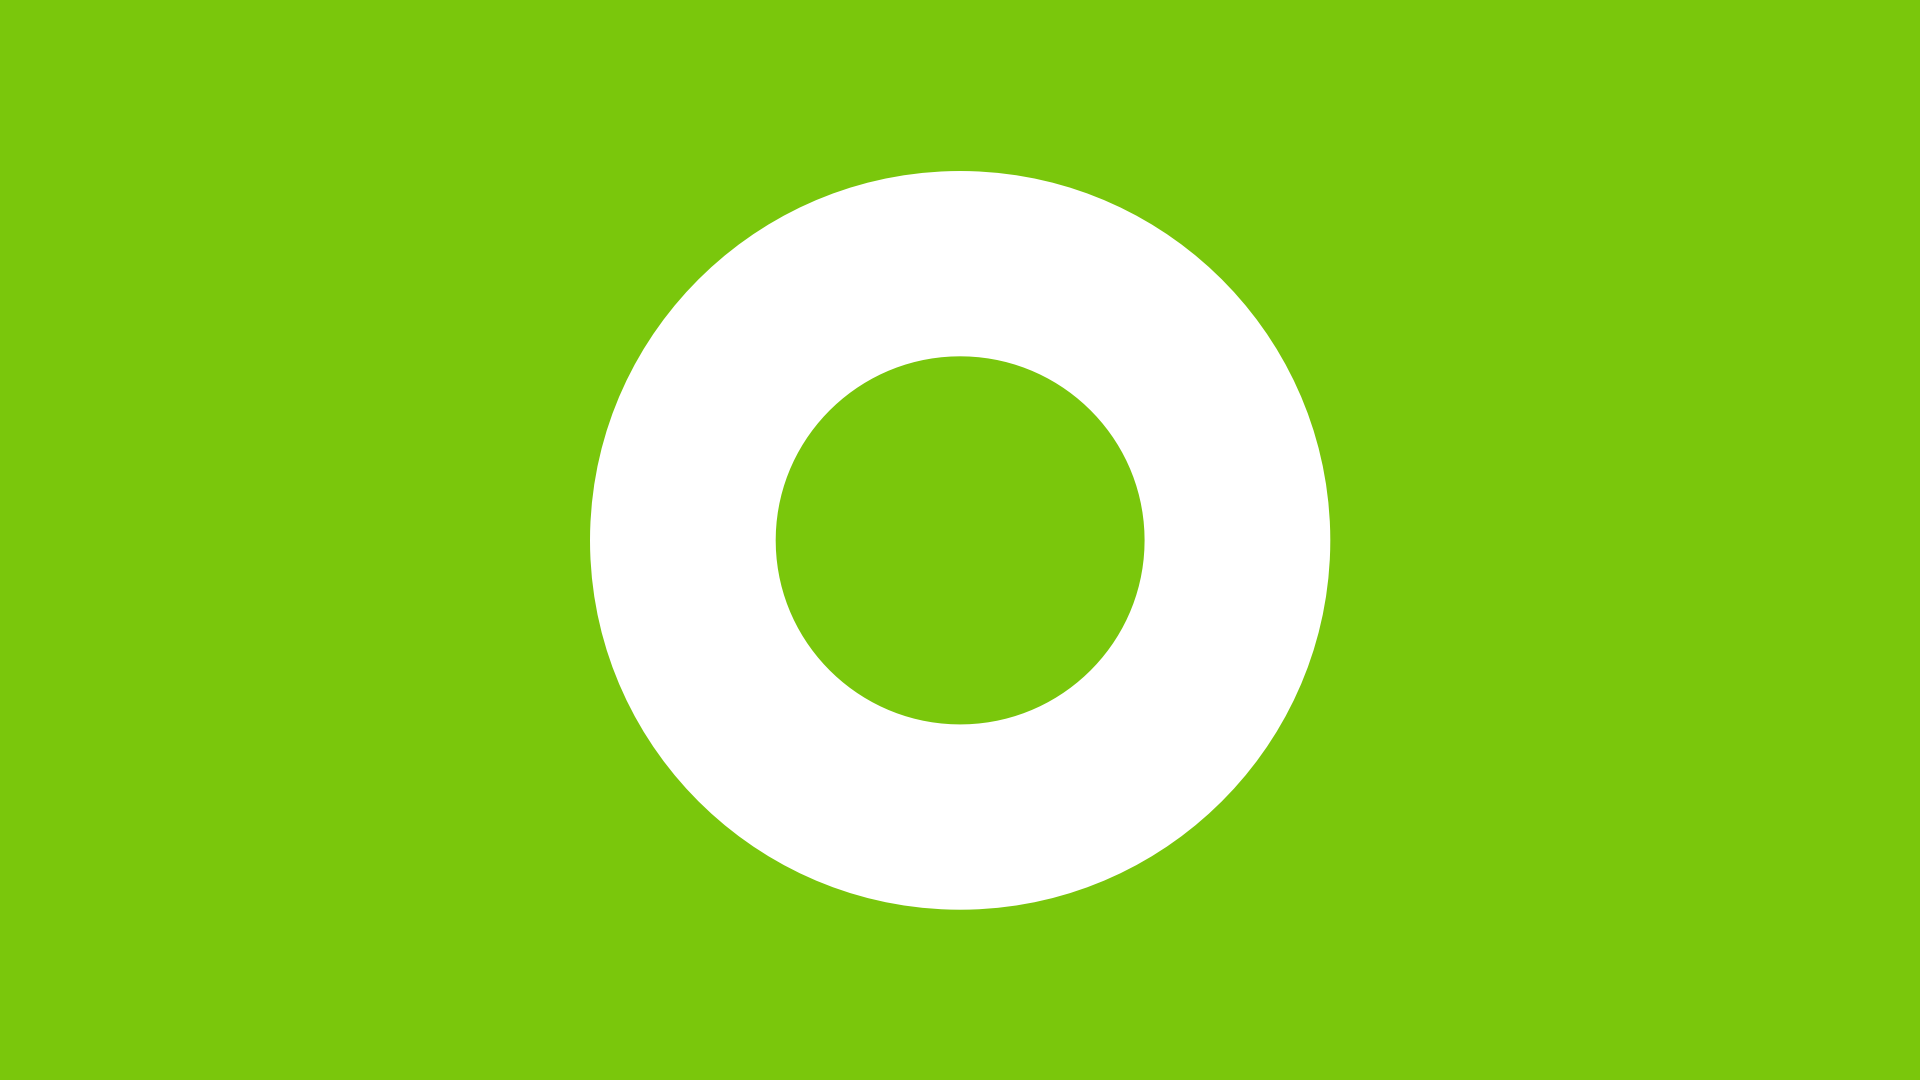 Green O Logo - Duolingo Logo Redesign (2017) - Jack Morgan Design